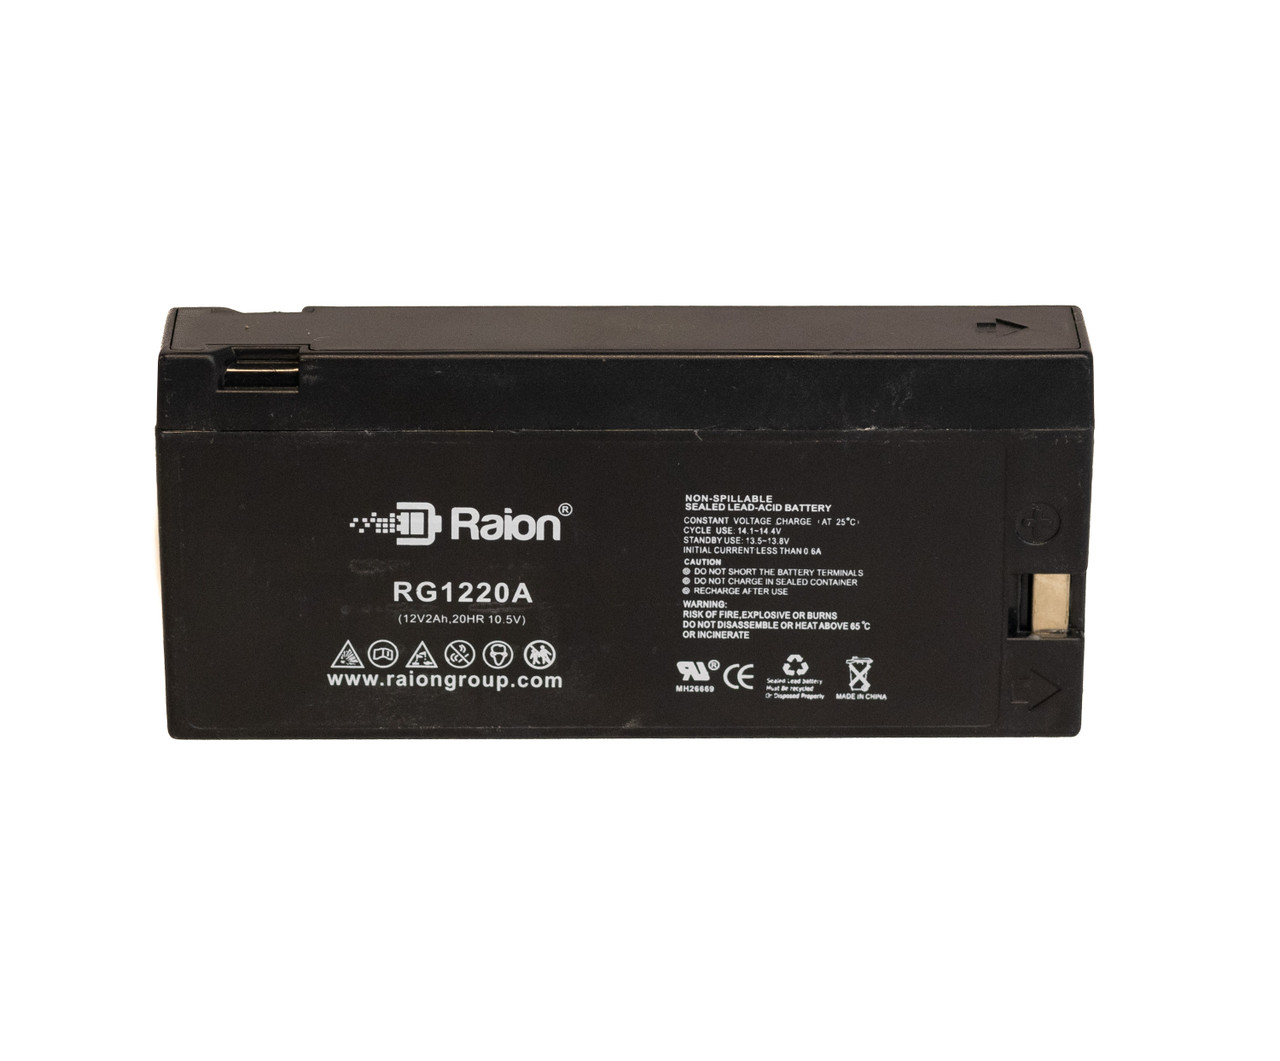 Raion Power RG1220A SLA Battery for Quasar VM-715